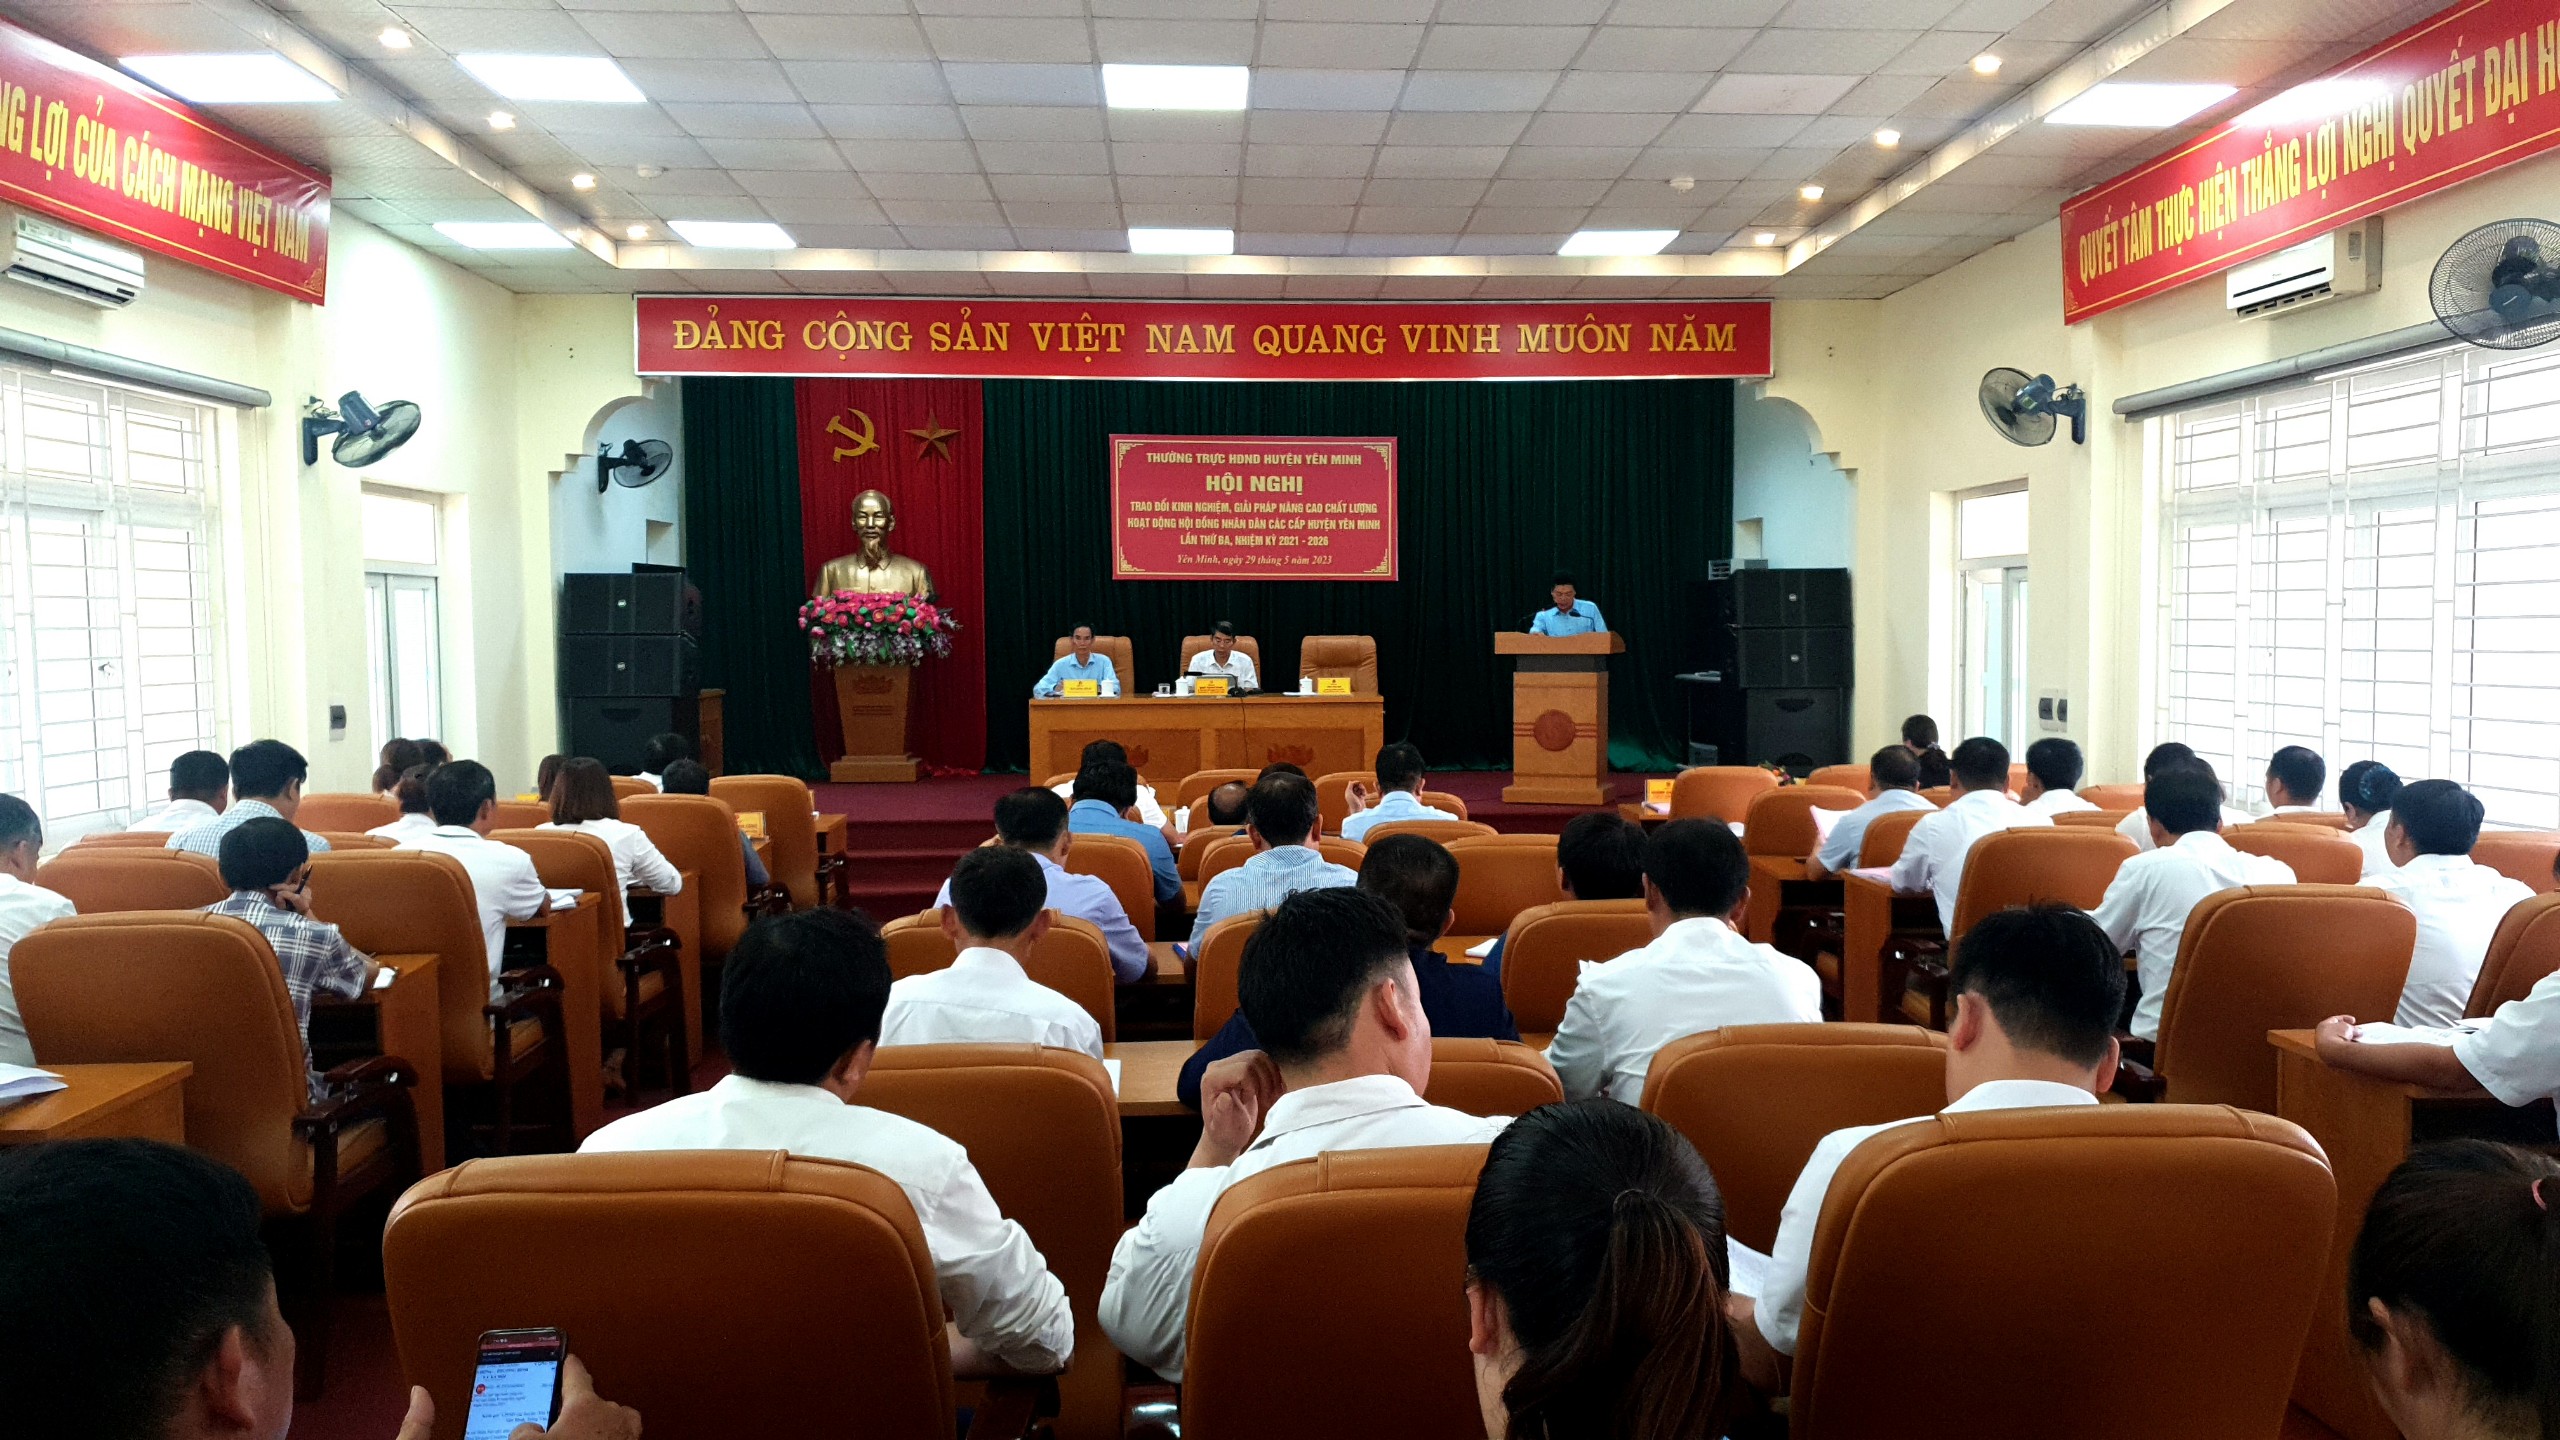 HĐND huyện Yên Minh tổ chức Hội nghị trao đổi nâng cao chất lượng hoạt động HĐND các cấp  lần thứ 3, nhiệm kỳ 2021 - 2026